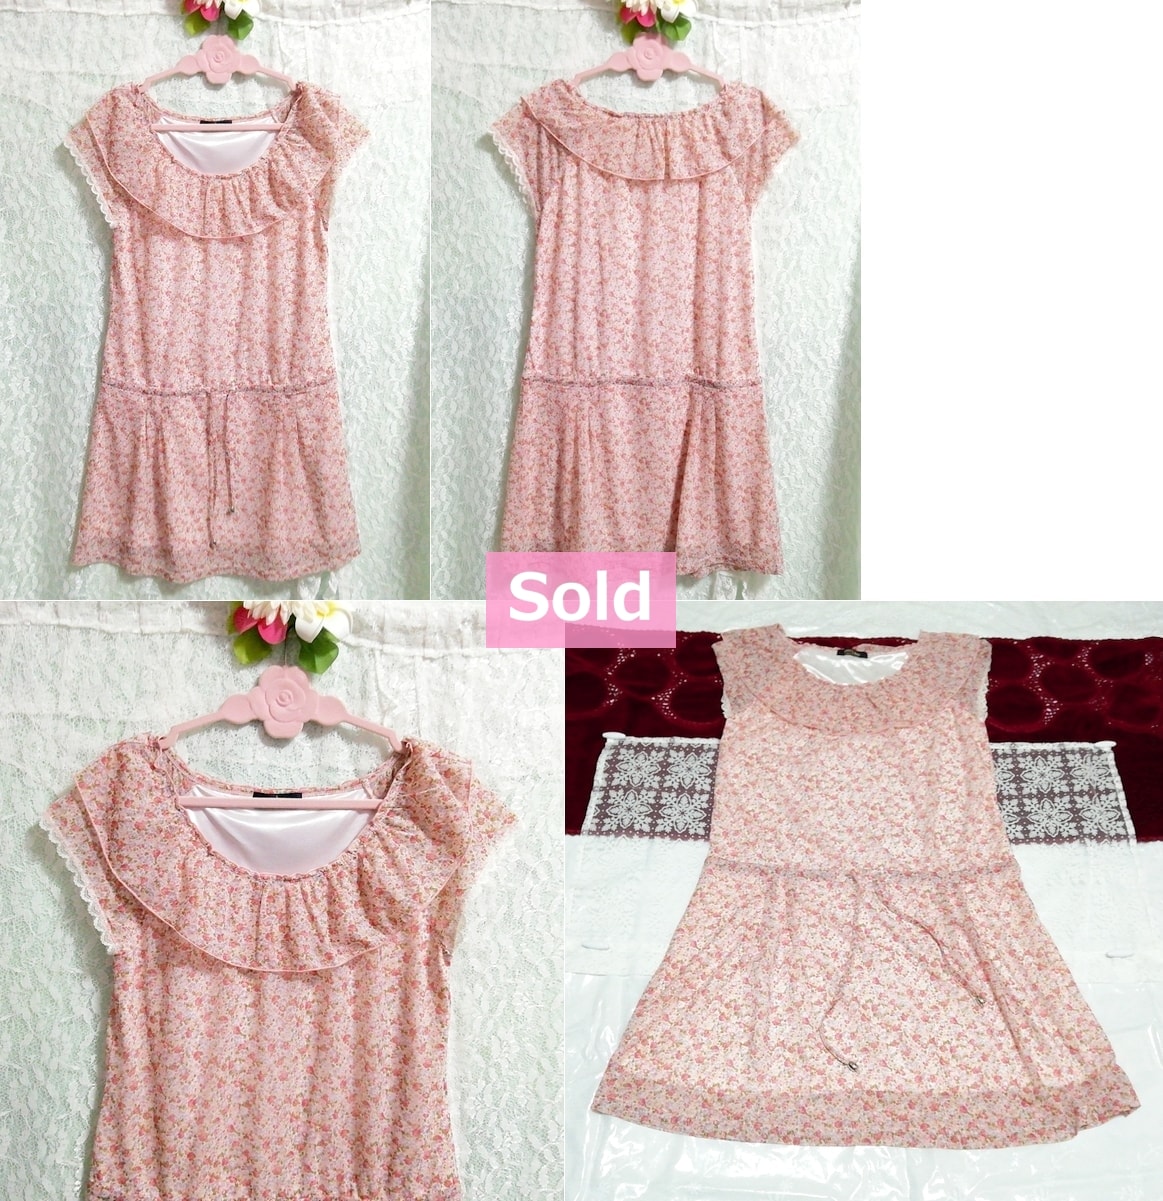 गुलाबी पुष्प शिफॉन बिना आस्तीन का ड्रेस अंगरखा सबसे ऊपर है, अंगरखा और छोटी आस्तीन और मध्यम आकार